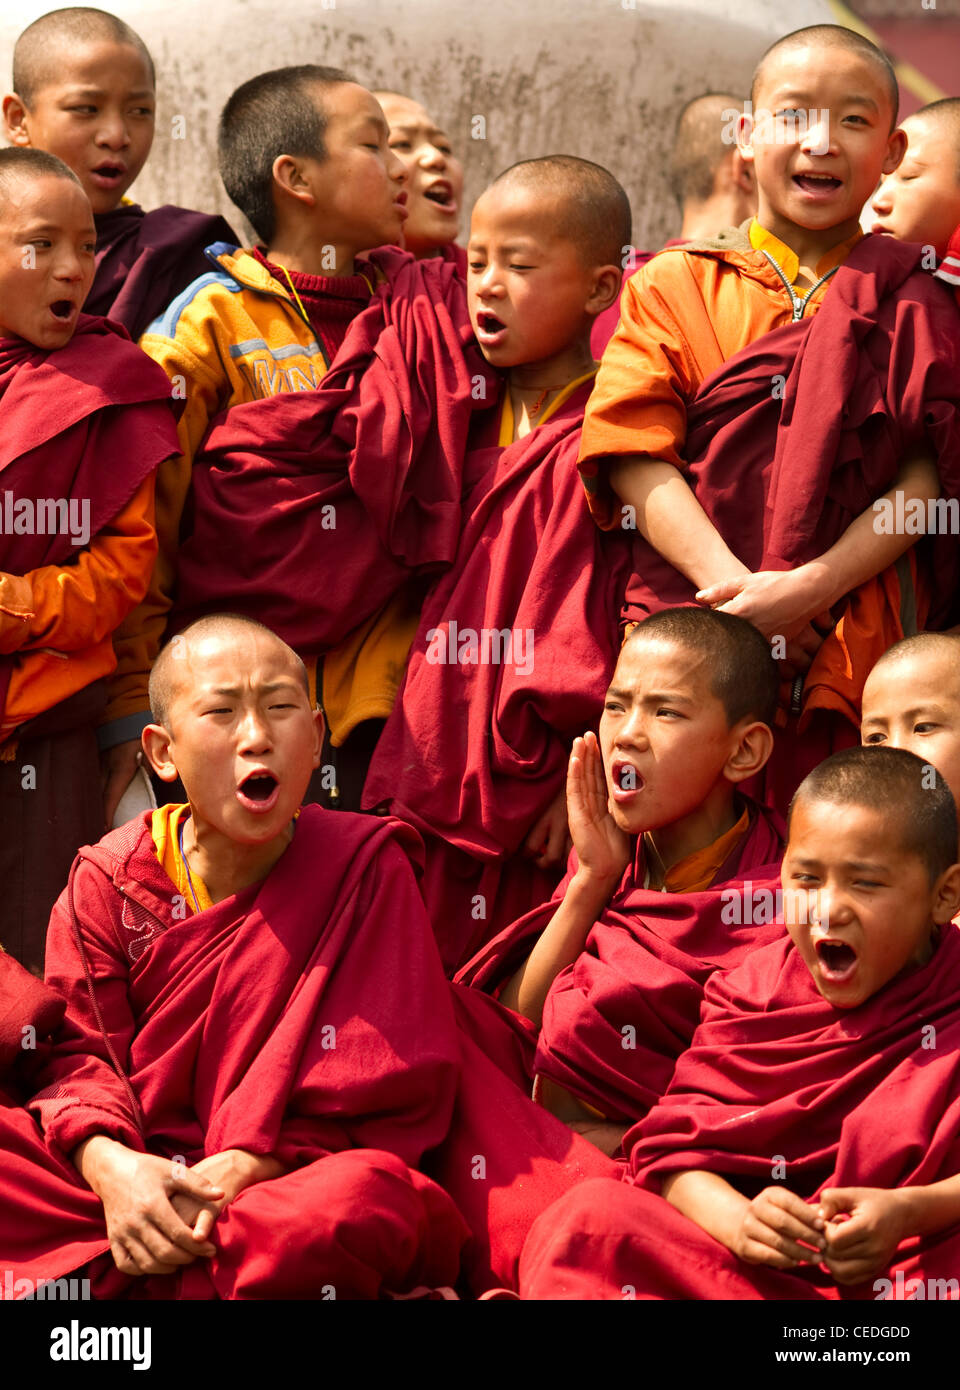 Les moines bouddhistes dans un Losar chantant dans un monastère au Sikkim, Inde Banque D'Images